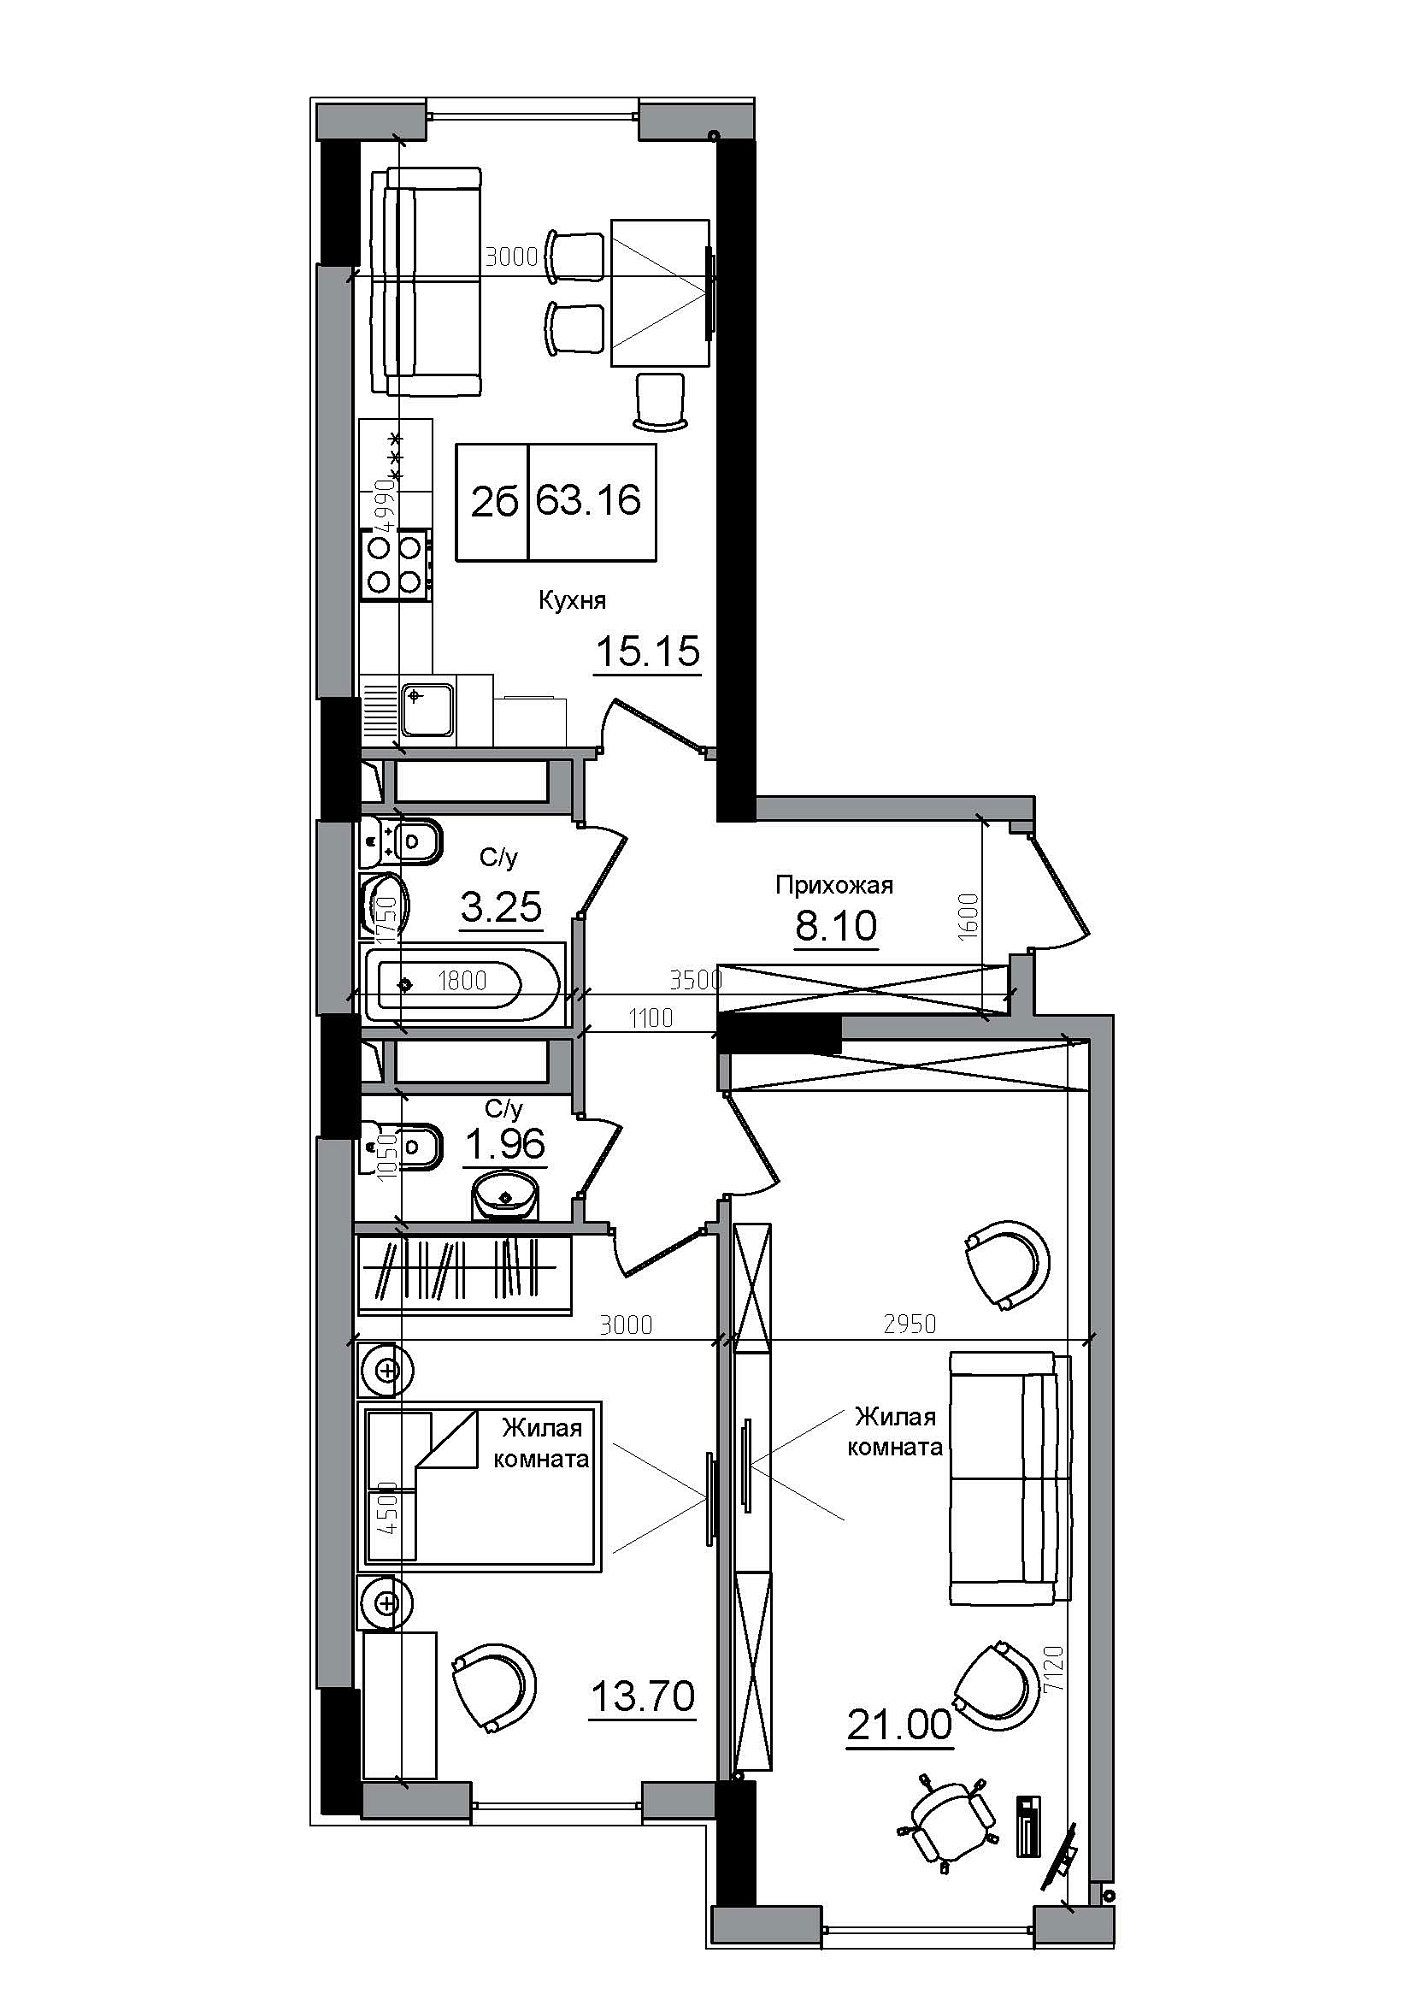 Планировка 2-к квартира площей 63.16м2, AB-12-12/00004.